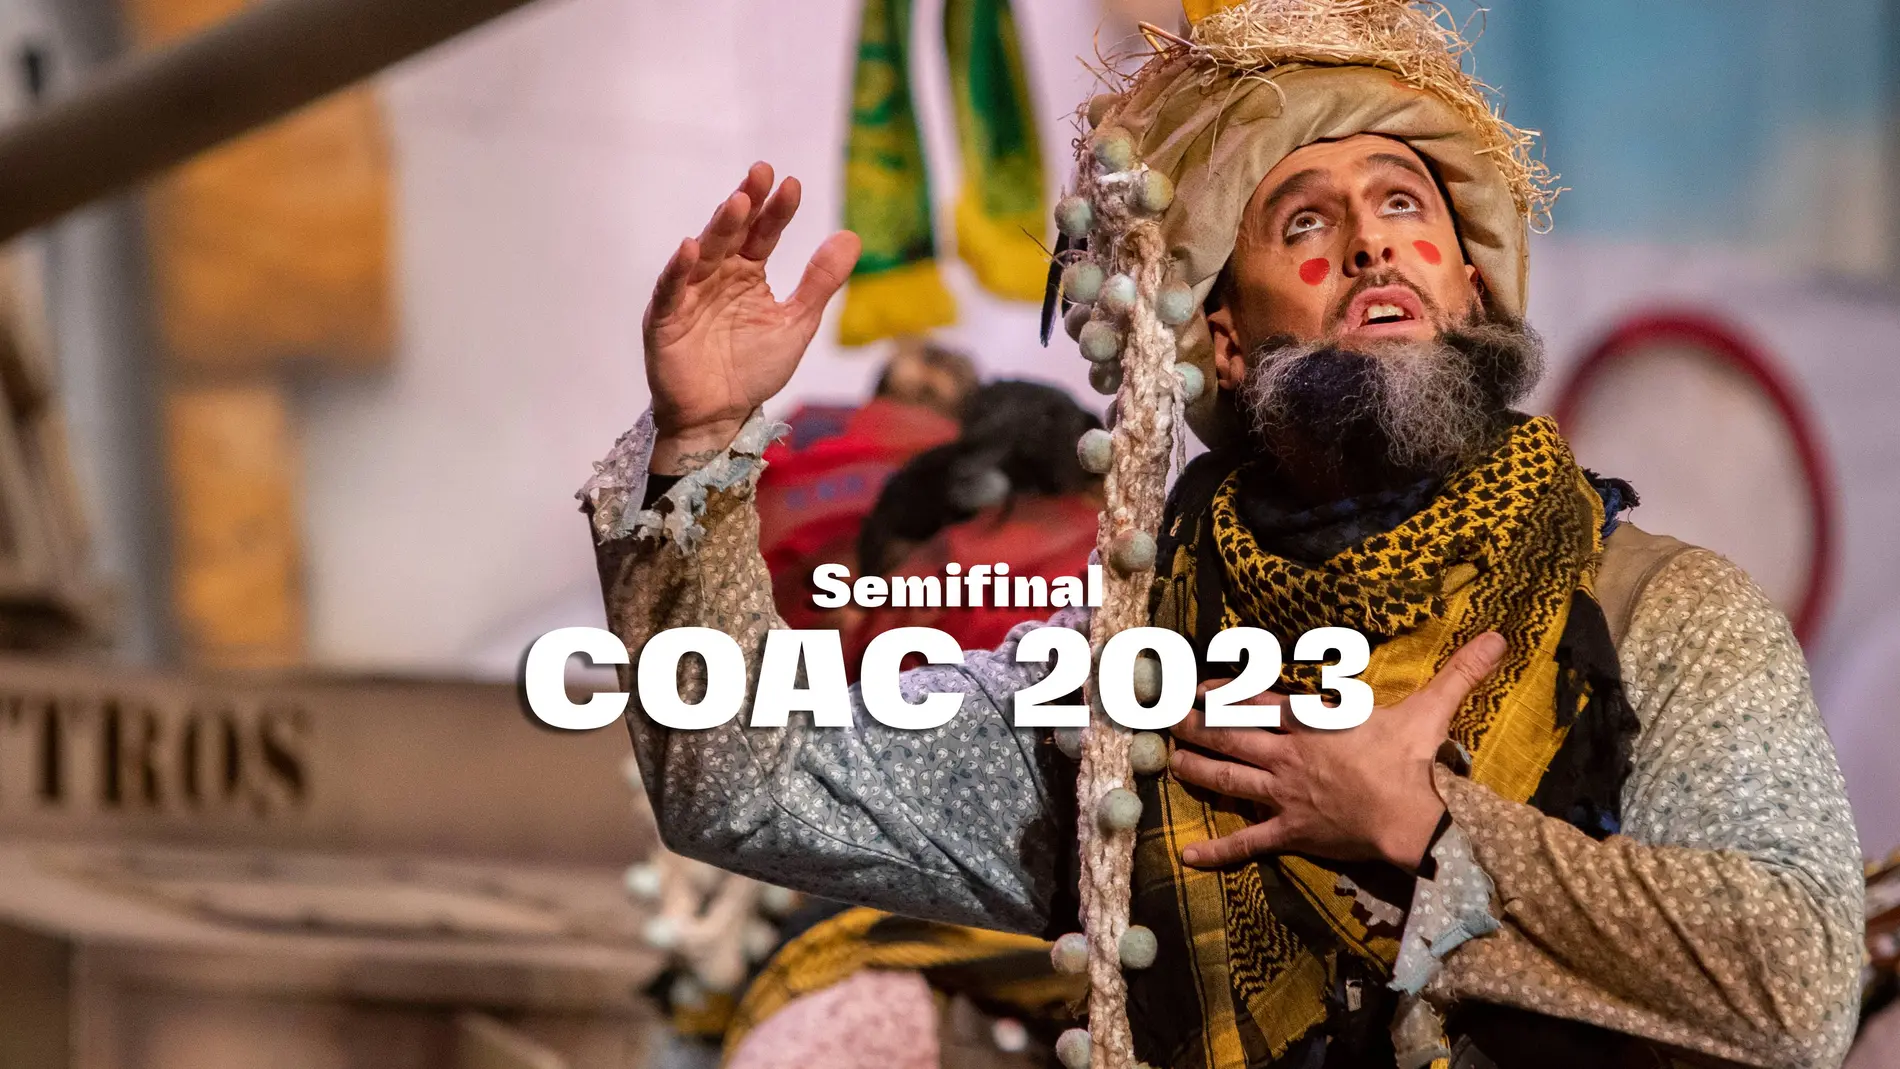 COAC 2023: el lunes 13 de febrero comienza la semifinal del Carnaval de Cádiz